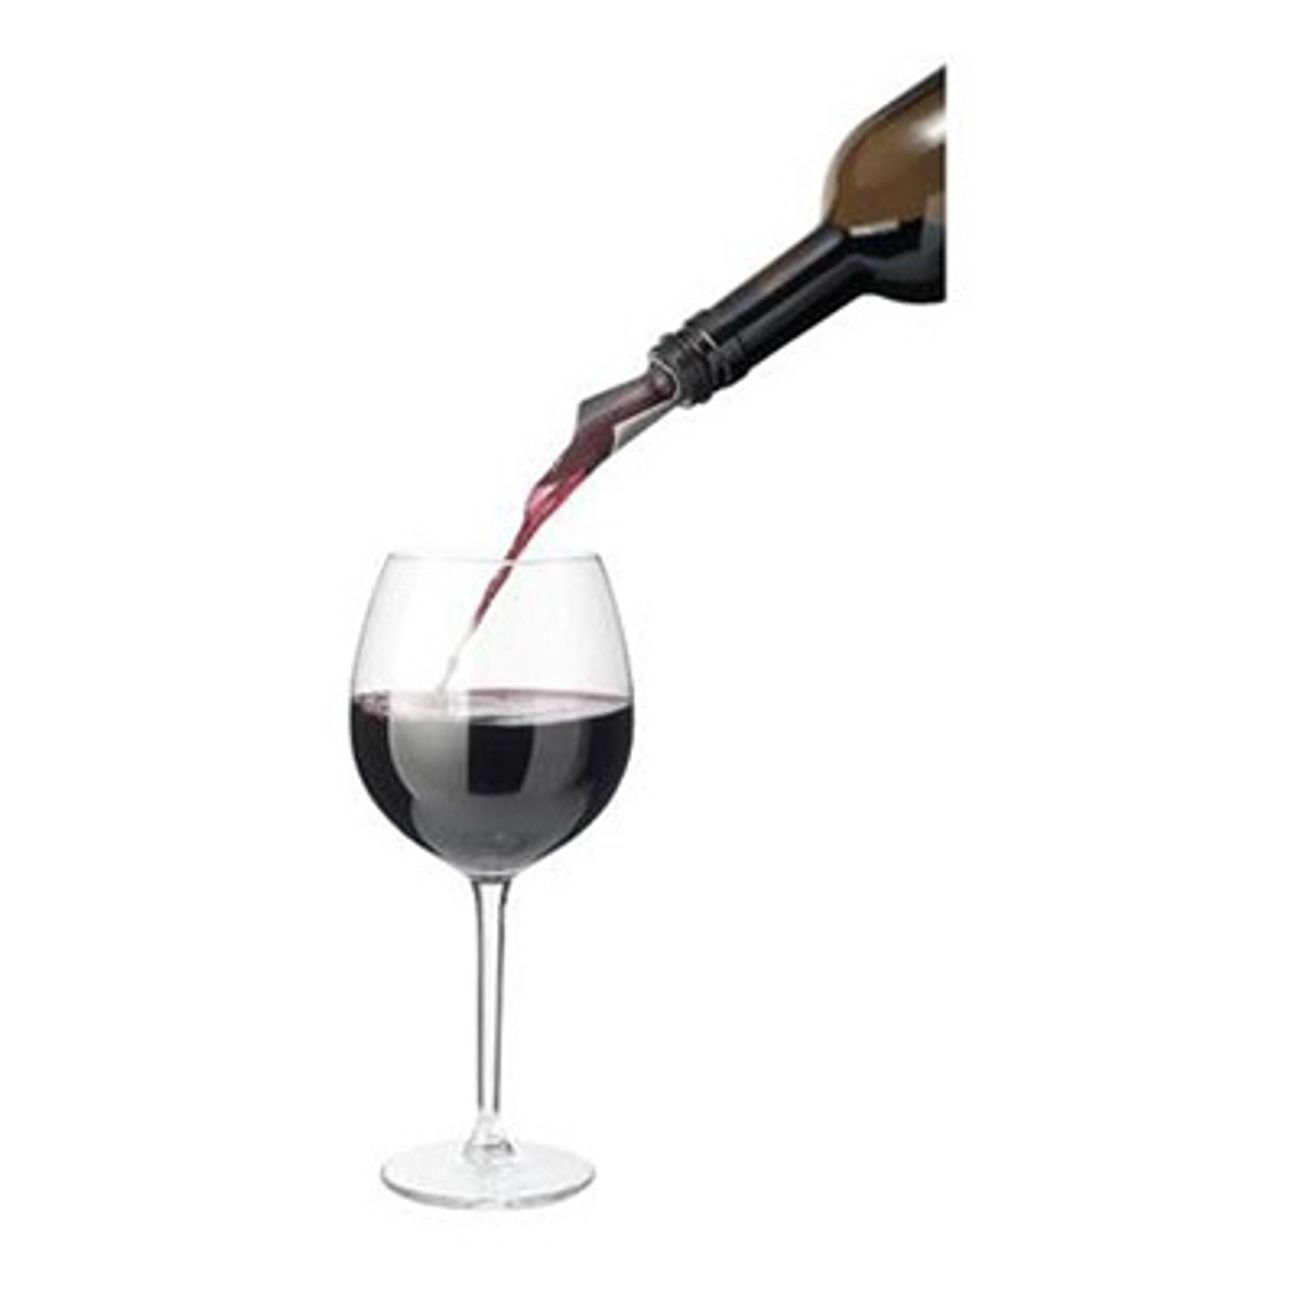 precision-wine-pourer-3